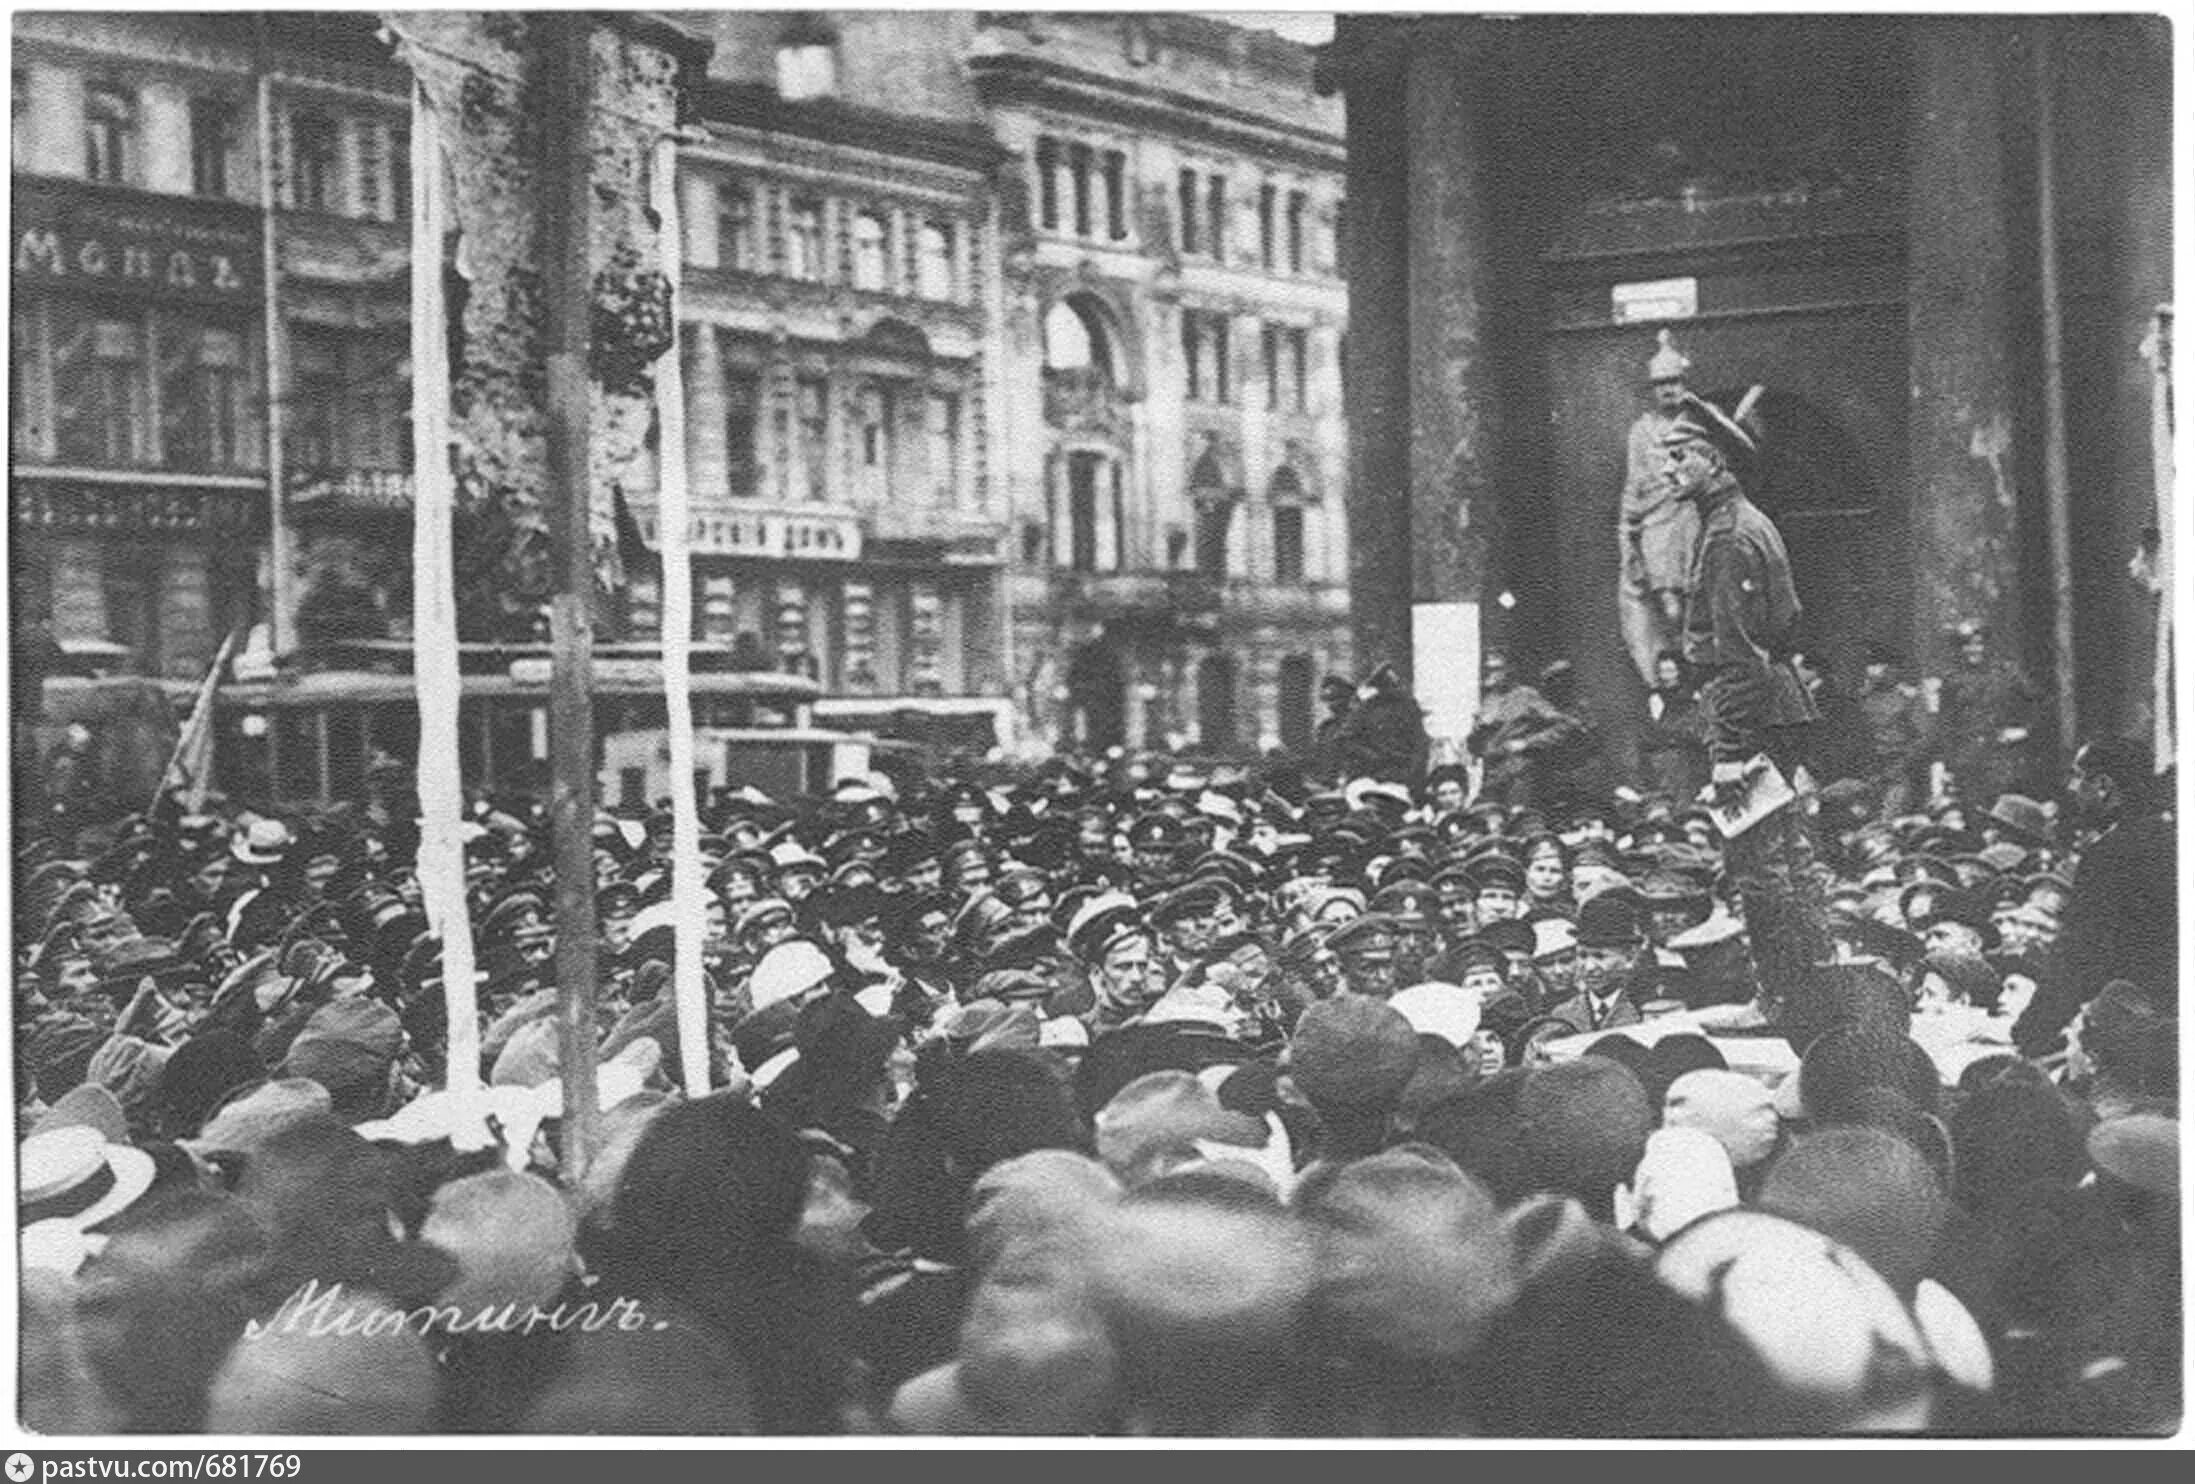 Манифестации в Петербурге 1917. Митинг на Невском проспекте 1917. Демонстрация на Неуском проспекте1917 года. Митинг 1917